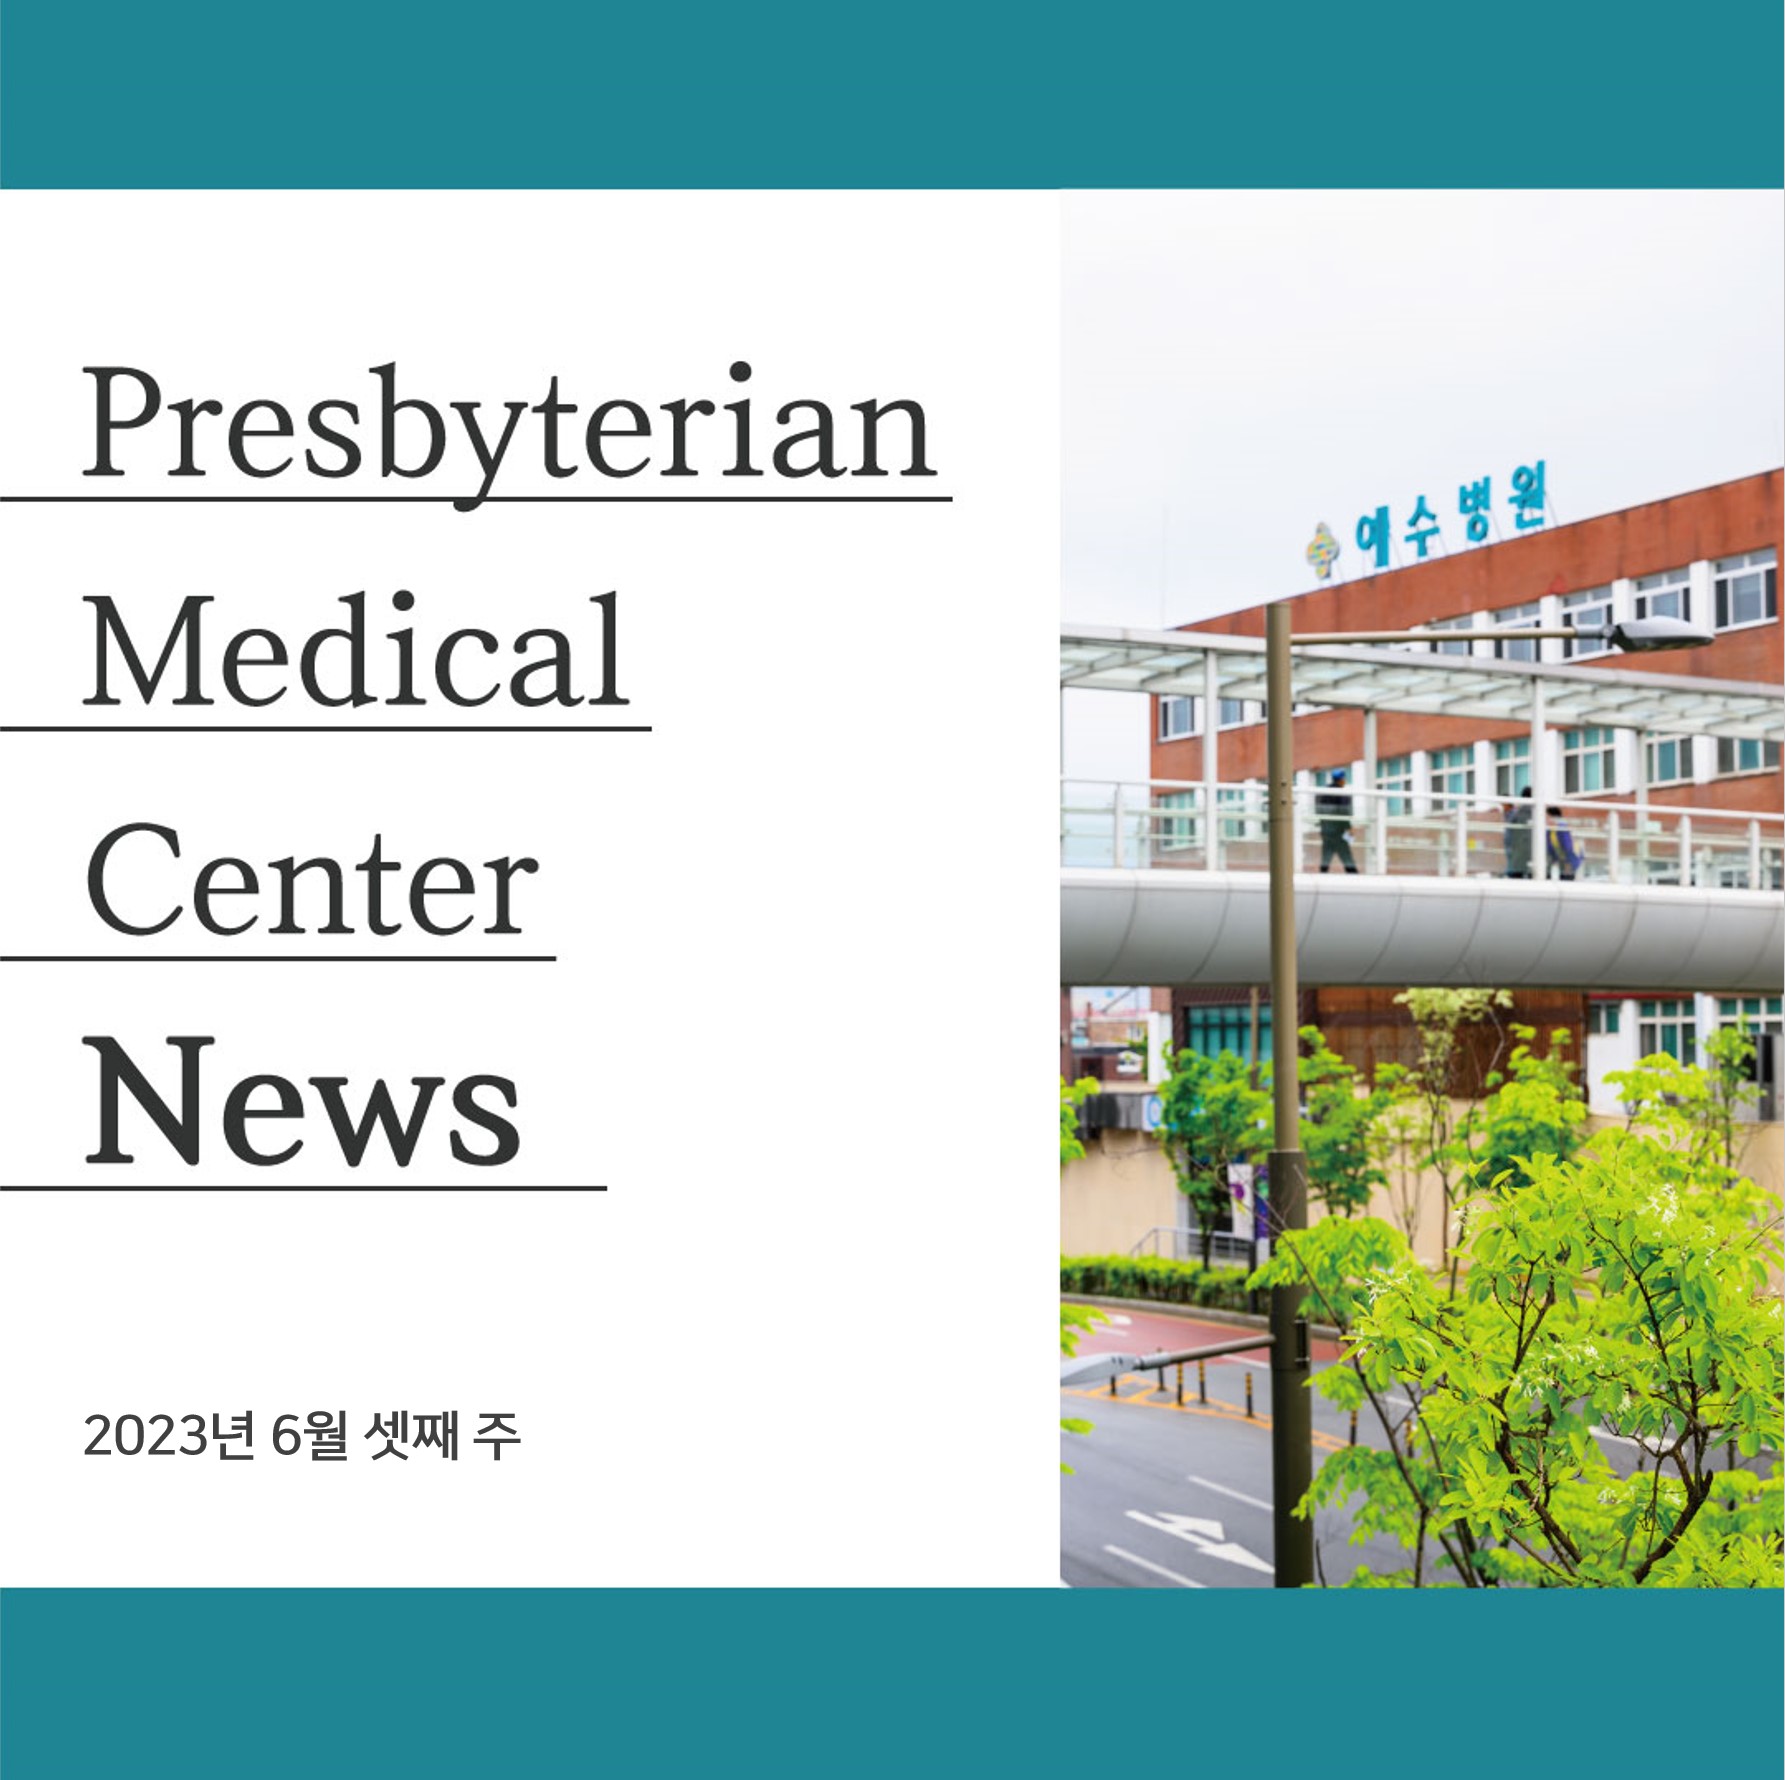 Presbyterian
Medical
Center
News

2023년 6월 셋째 주